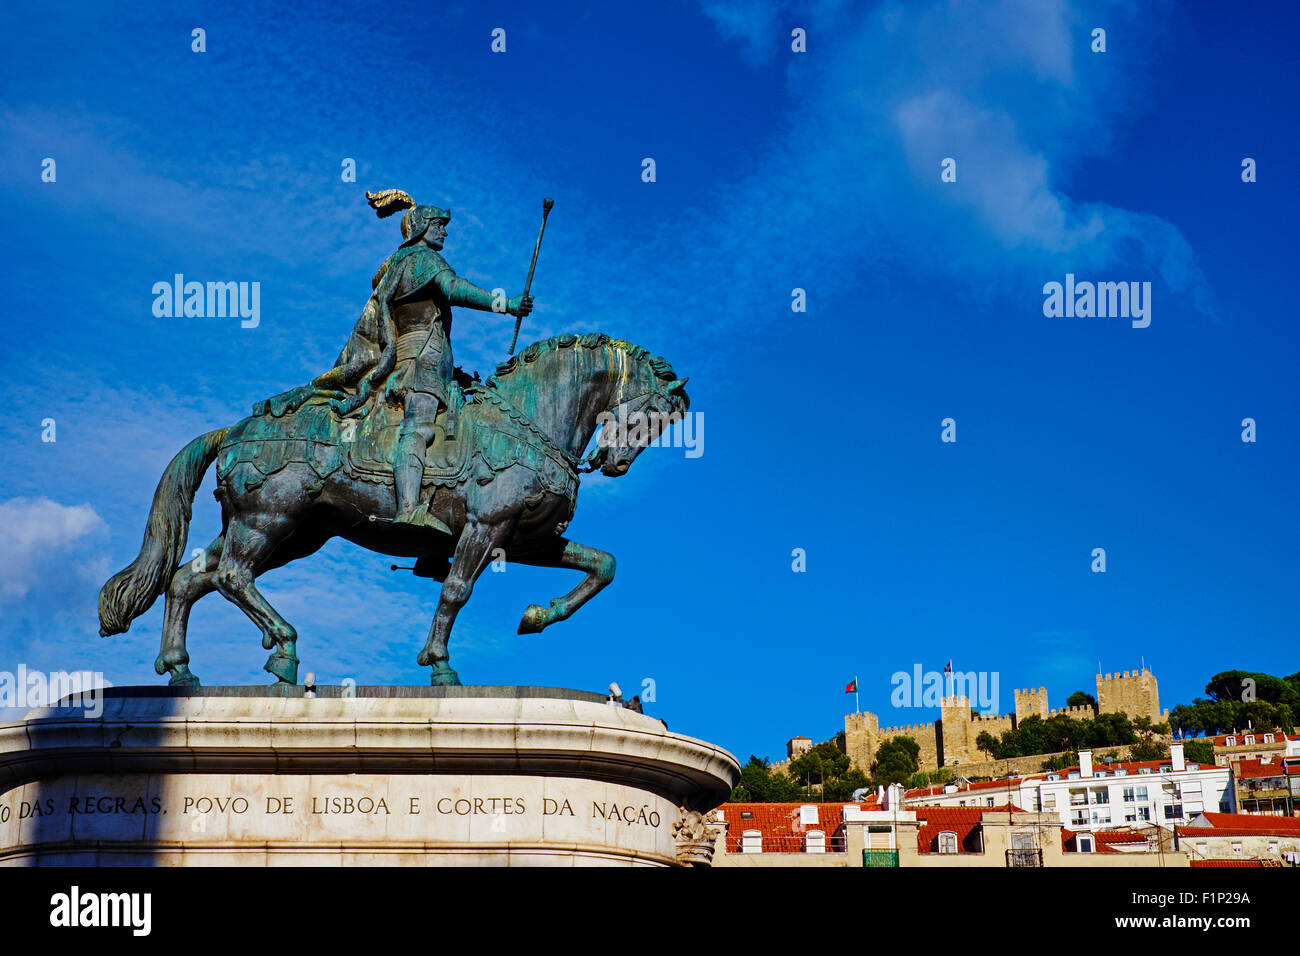 Portugal, Lisbonne, Praça de Figueira, king Jao je statue et le château Sao Jorge Banque D'Images